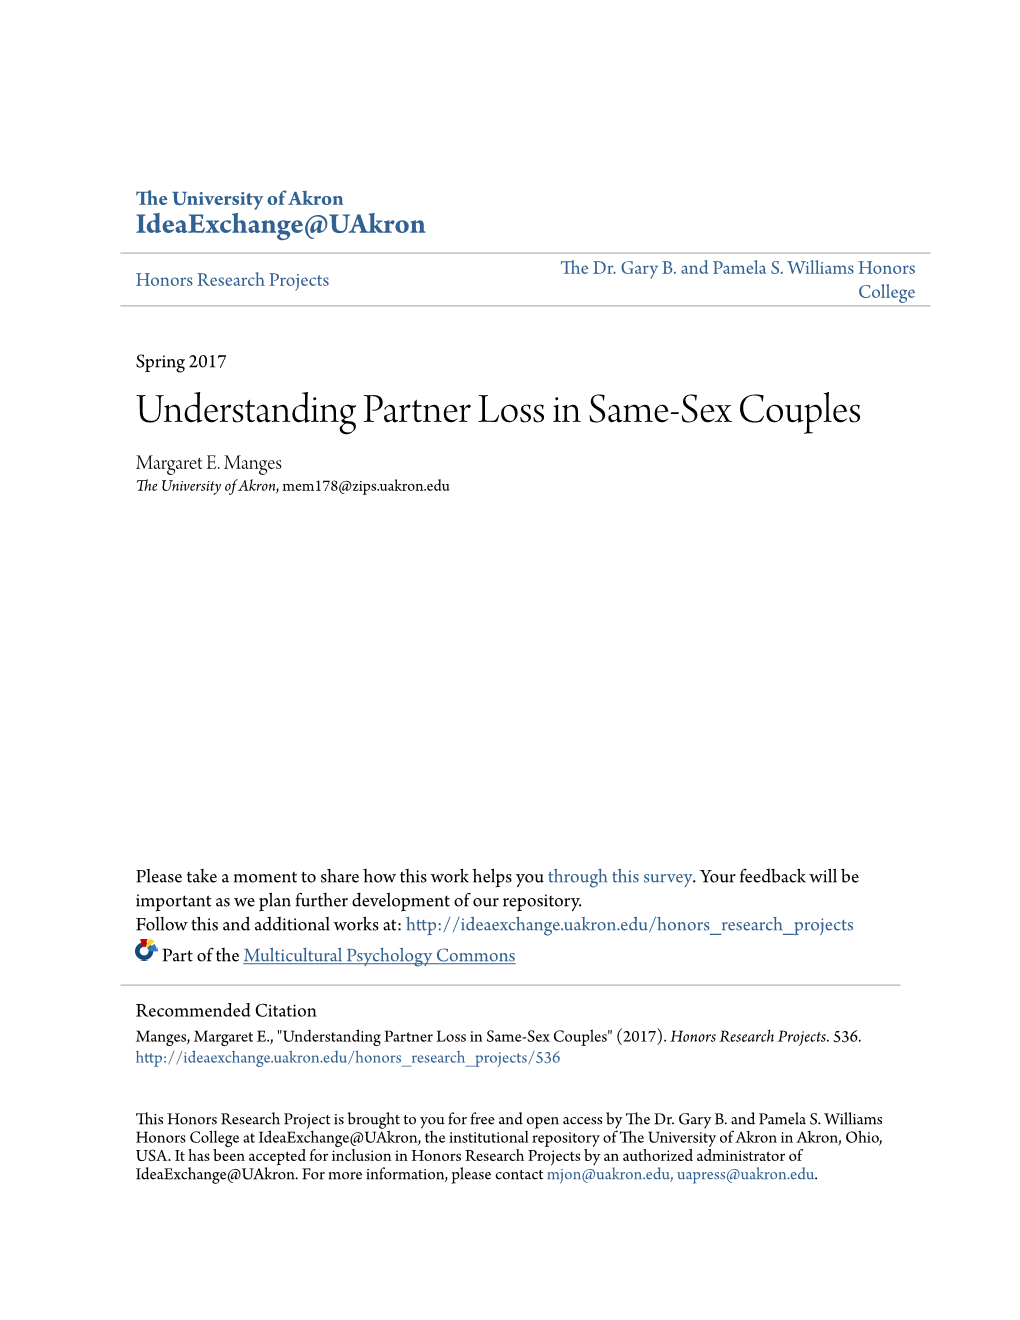 Understanding Partner Loss in Same-Sex Couples Margaret E